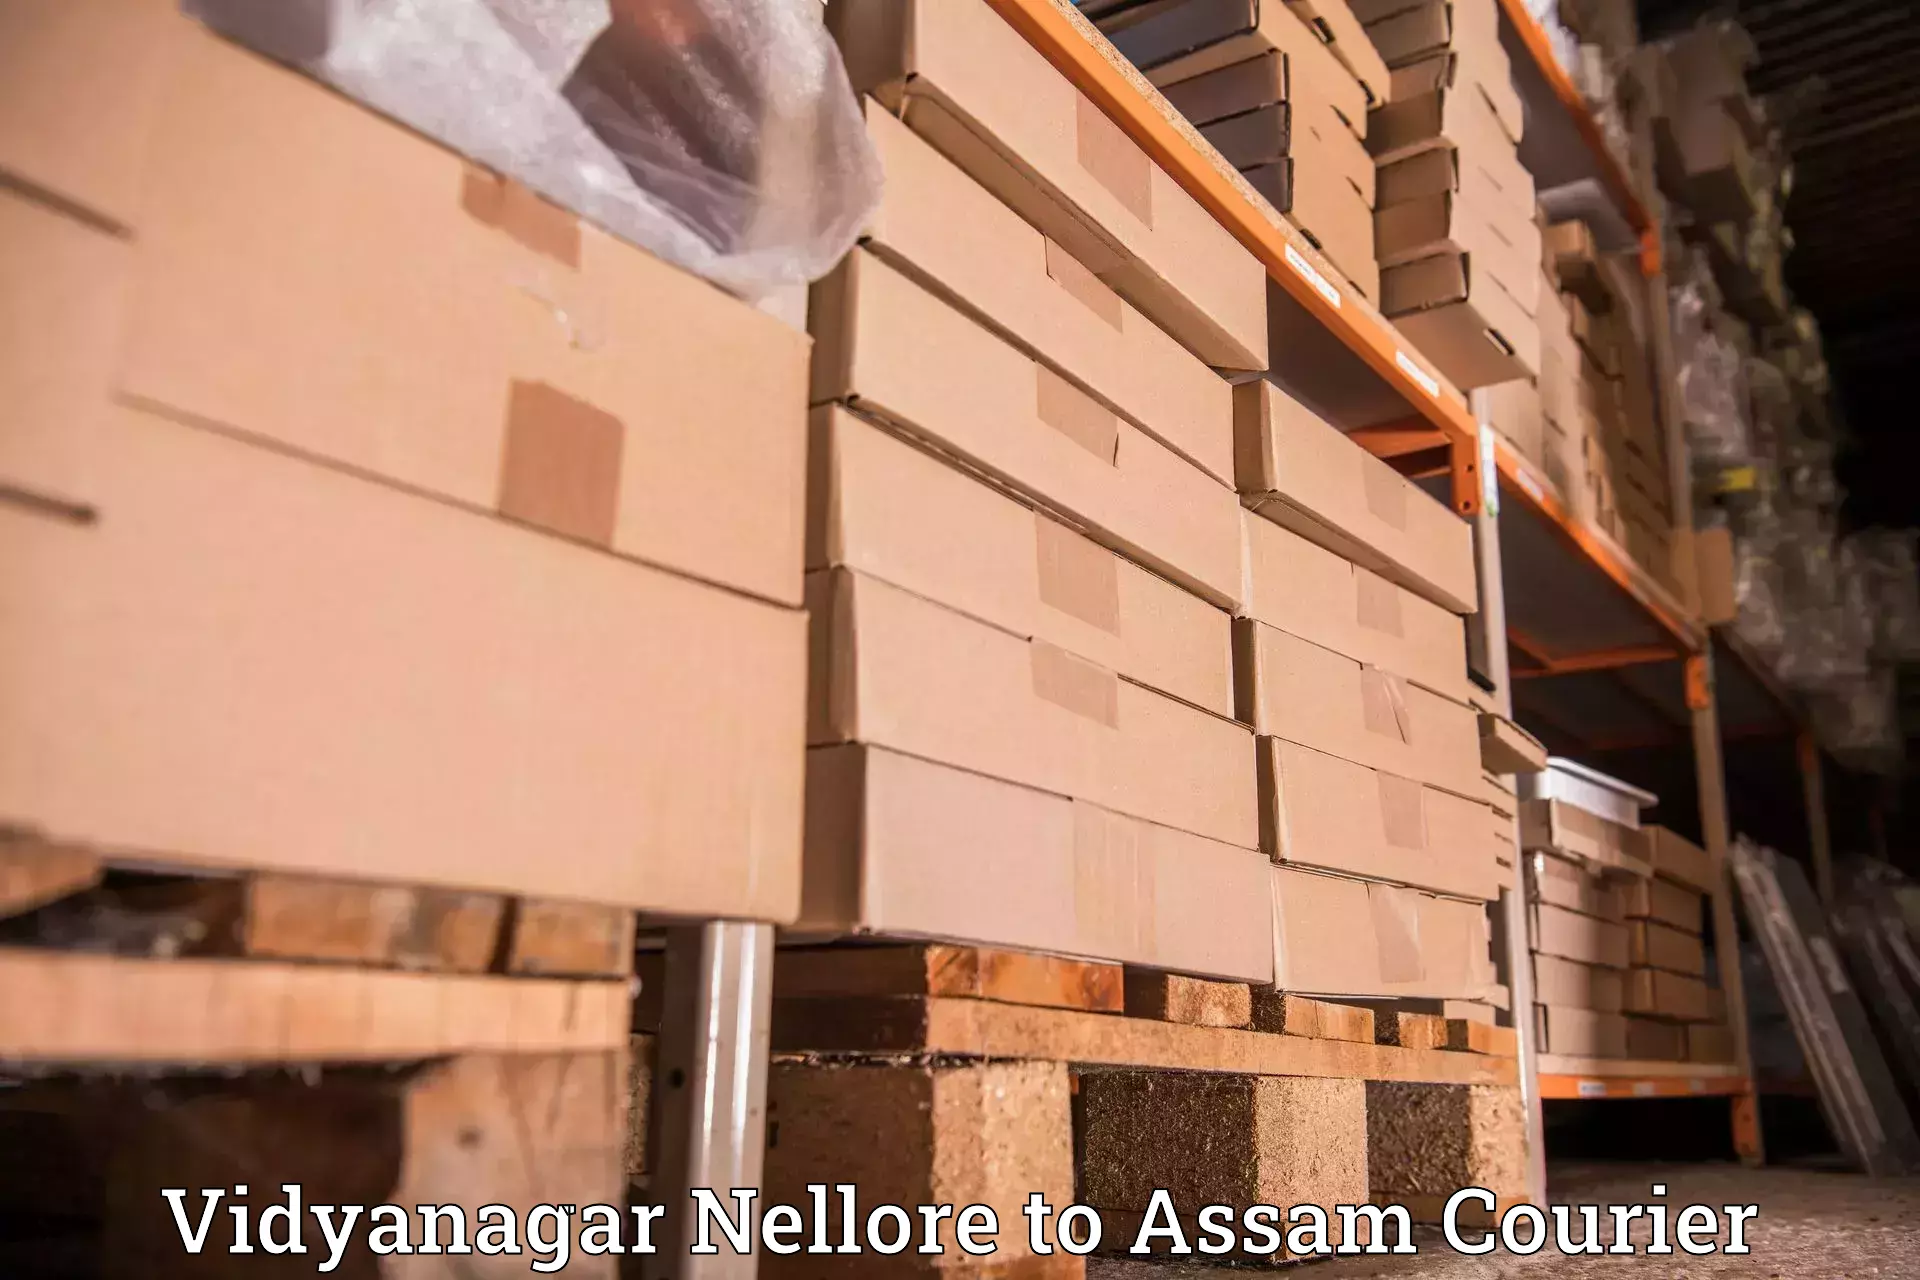 Corporate courier solutions Vidyanagar Nellore to Chabua